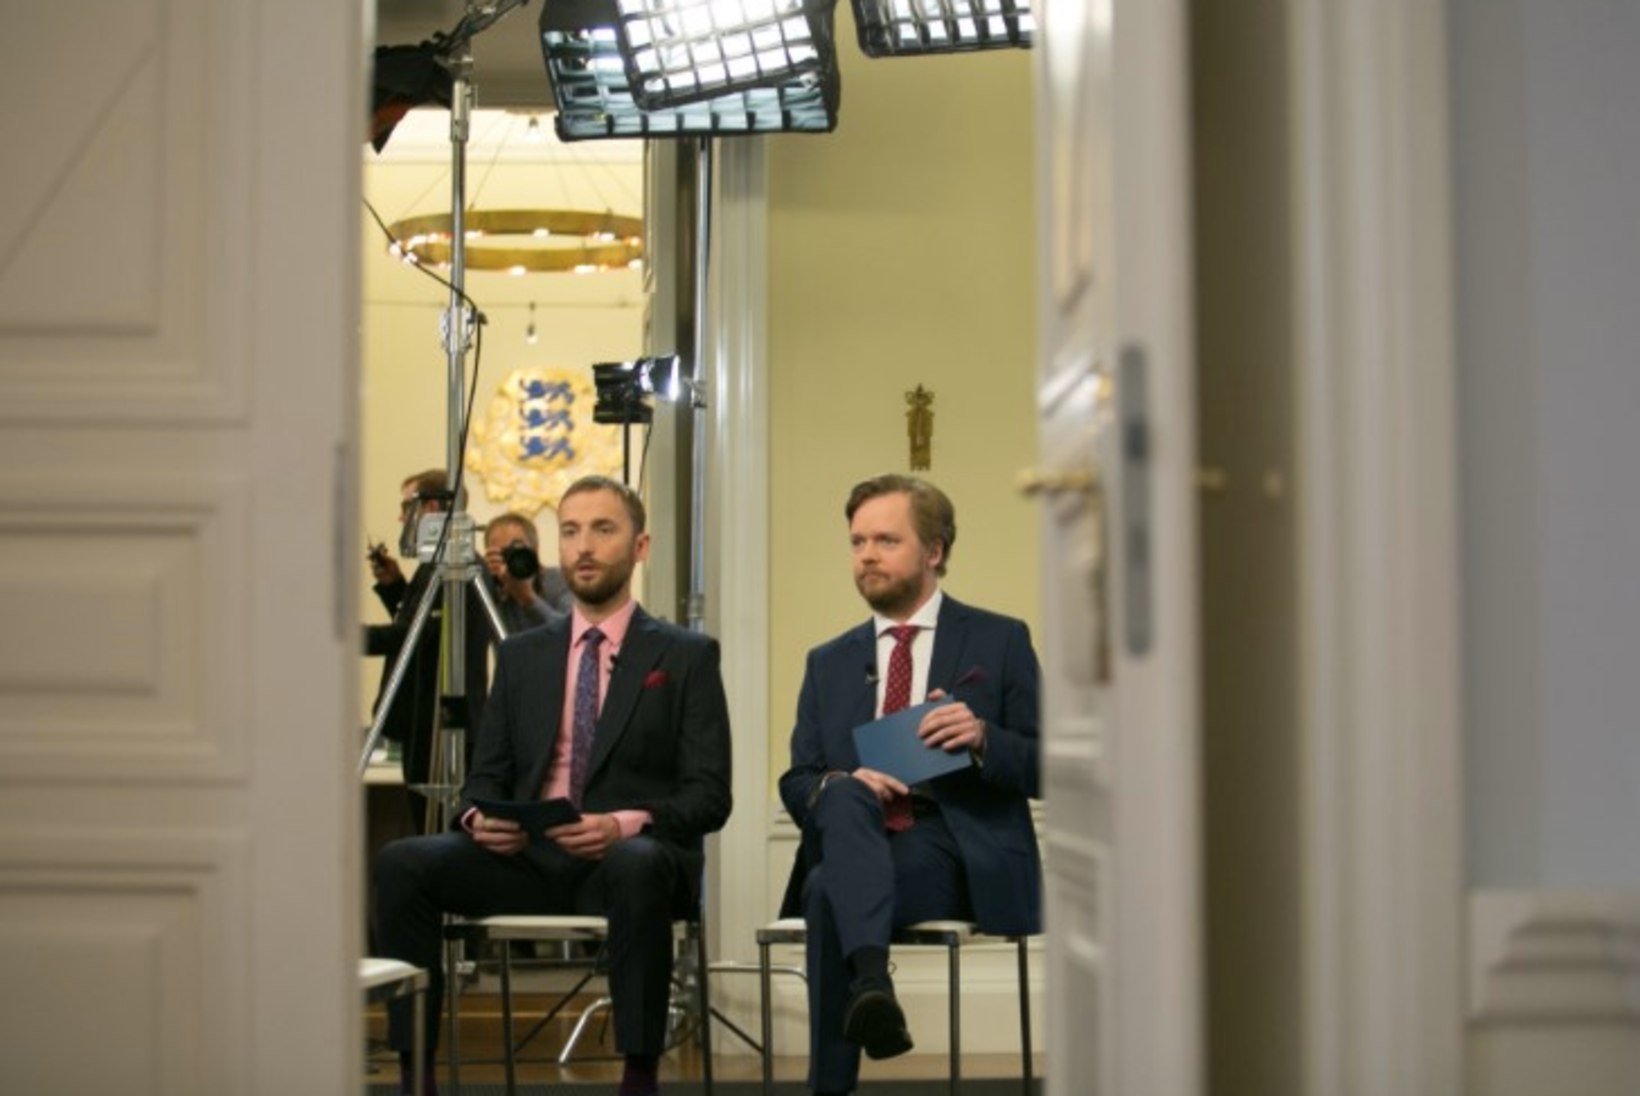 PILDID | Märt Avandi ja Ott Sepp tegid peaminister Jüri Ratasega aastalõpuintervjuud